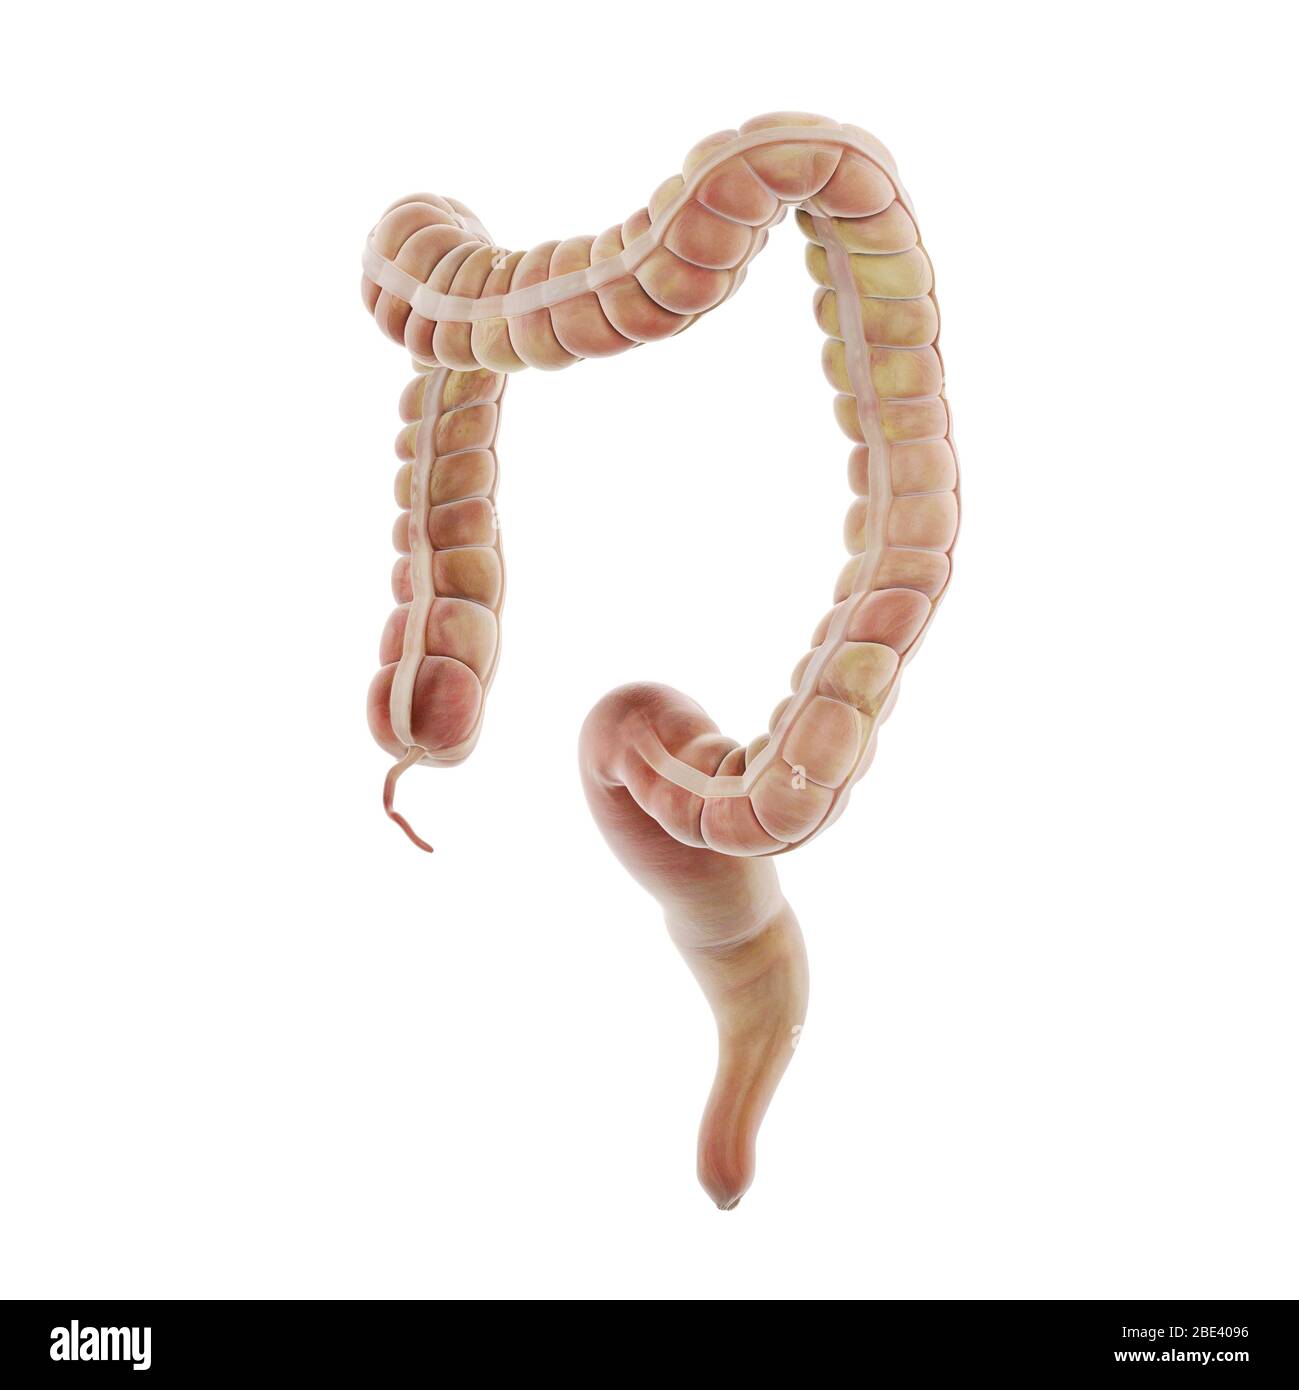 Large intestine, illustration. Stock Photo